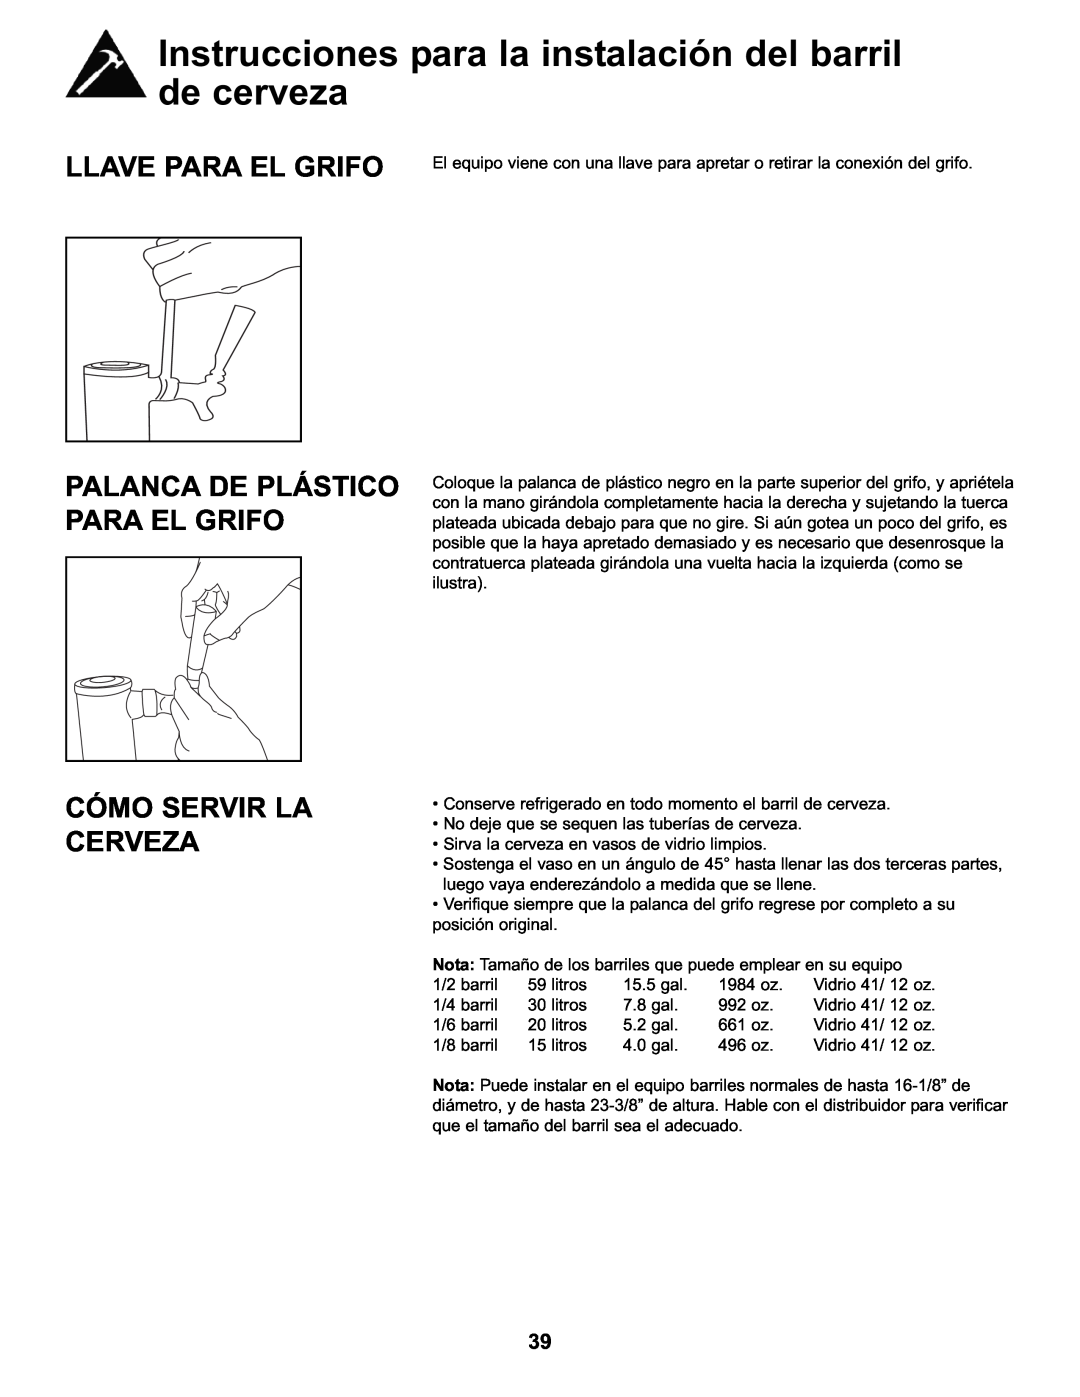 Danby DKC146SLDB manual Llave Para El Grifo, Palanca De Plástico Para El Grifo Cómo Servir La Cerveza 